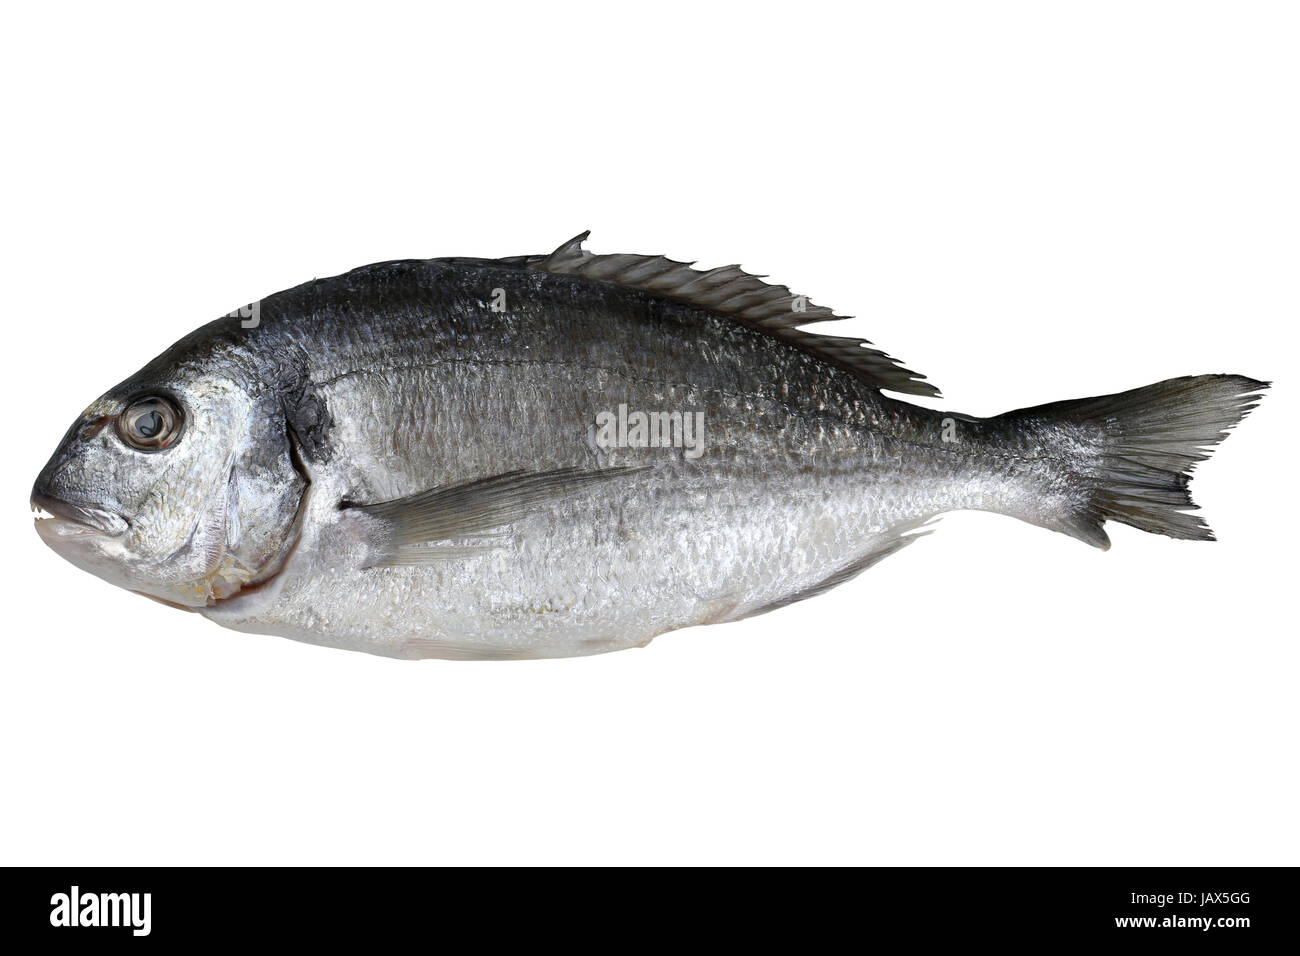 Frischer Fisch Dorade, freigestellt vor einem weissen Hintergrund Stock Photo